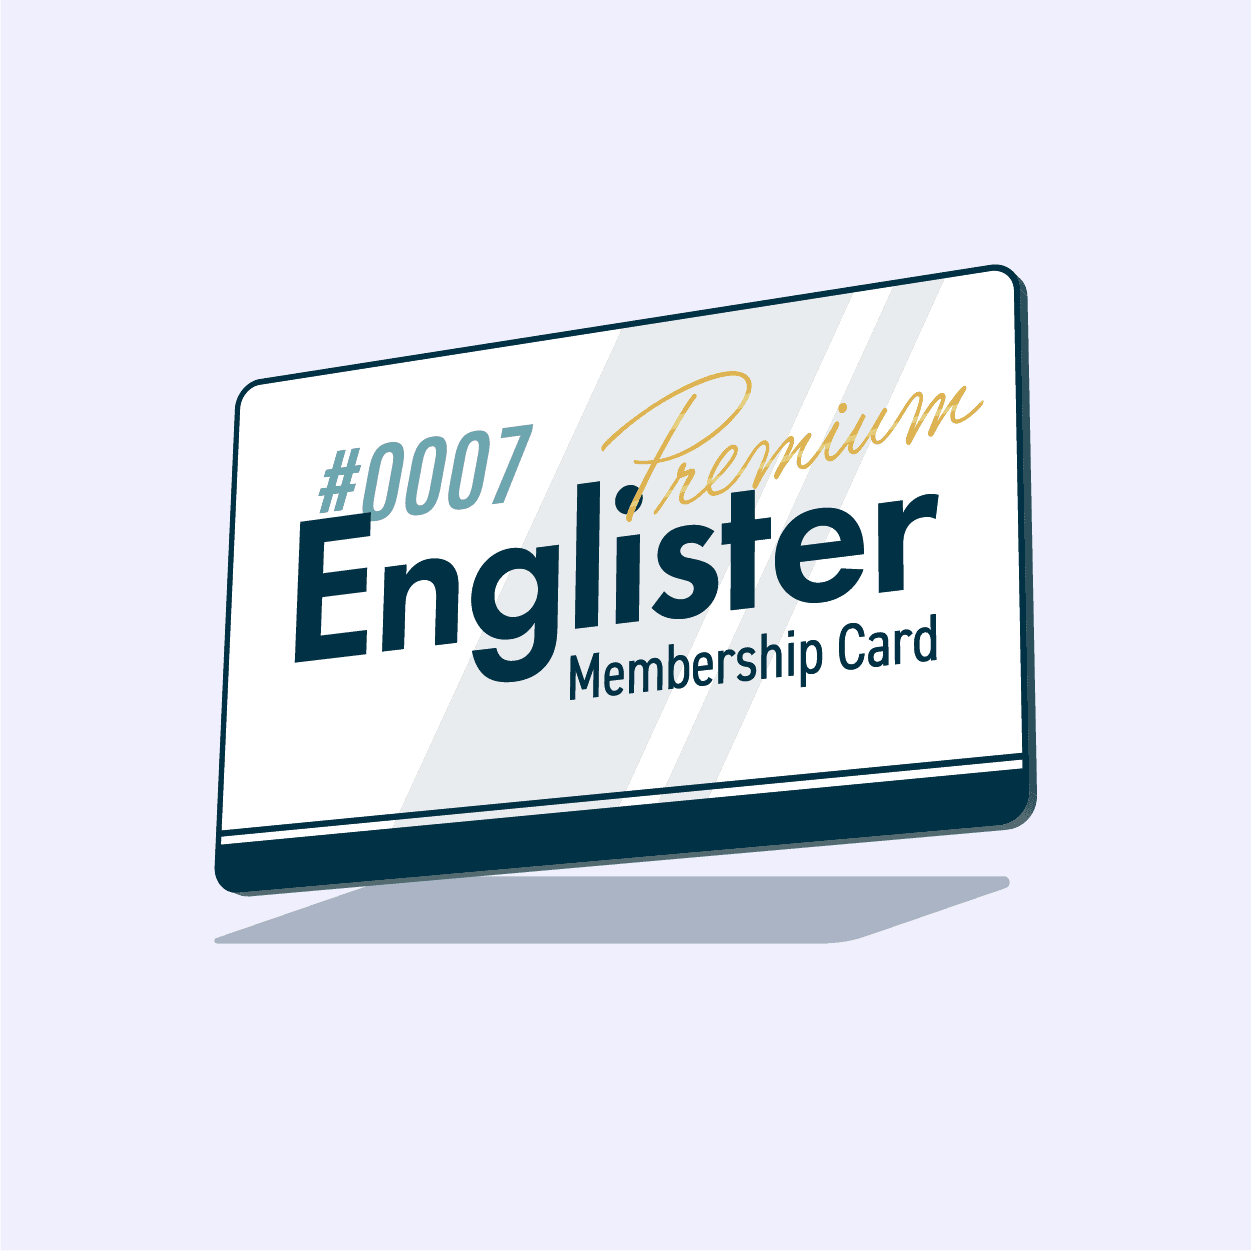 Englister Premium Membership #0007